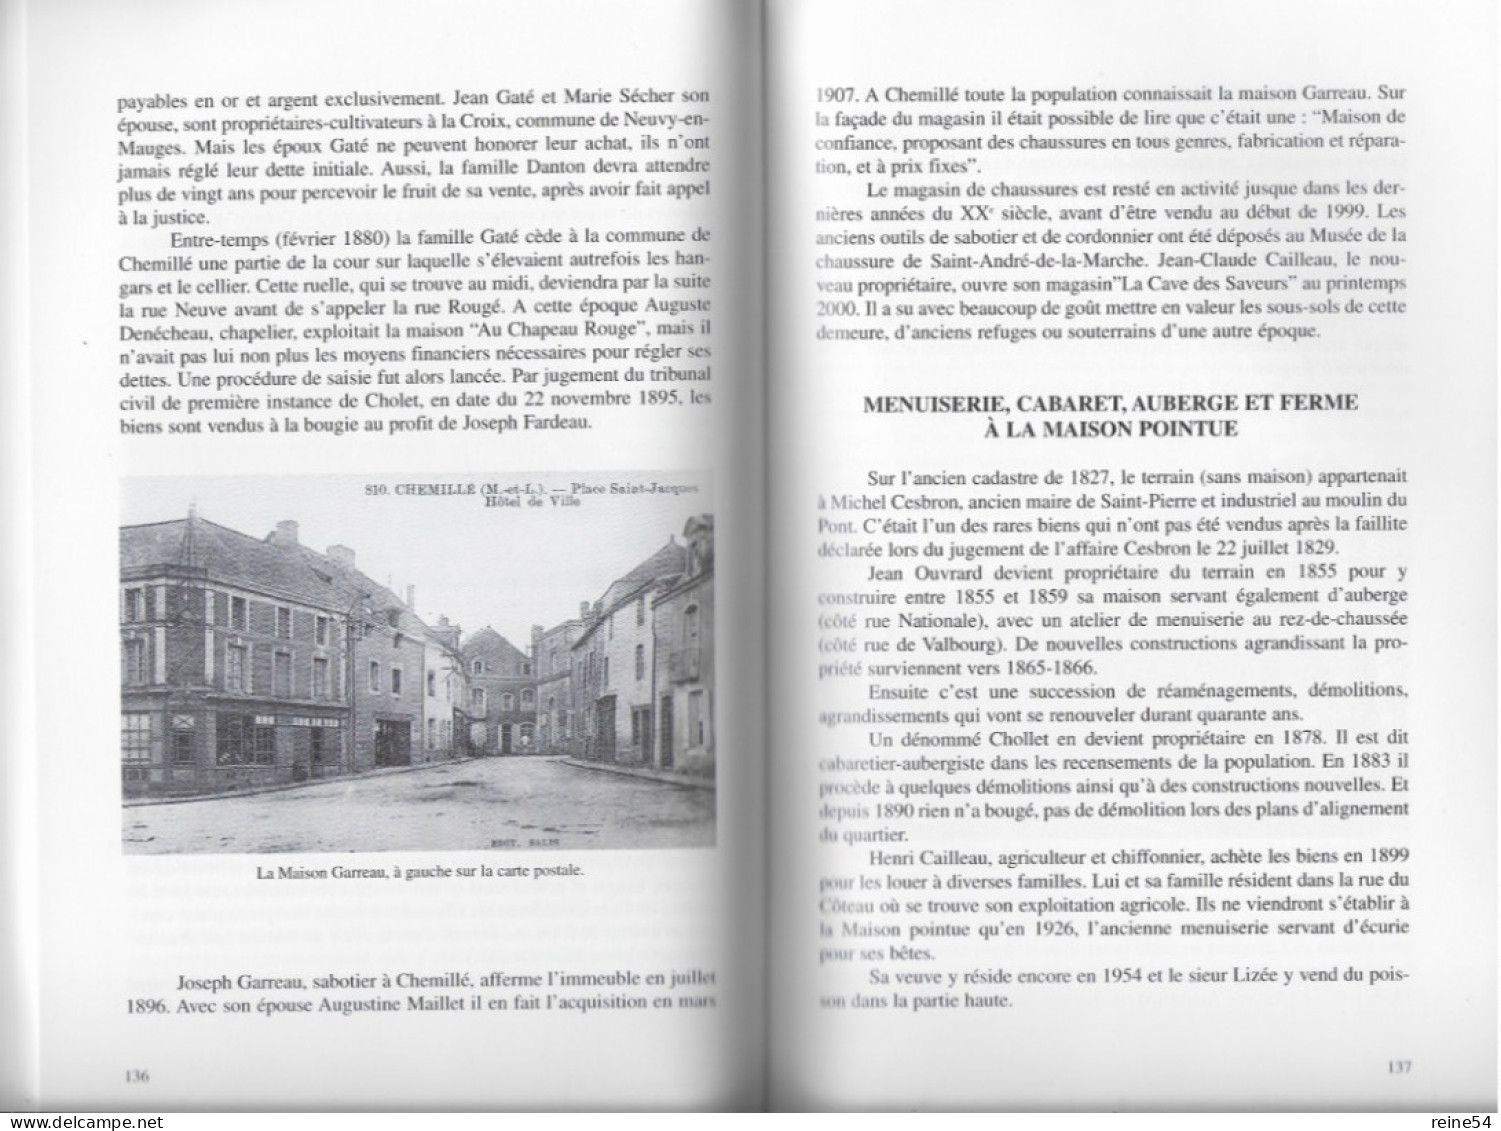 Histoire et petites histoires de CHEMILLE (49) Tome I Victor Bouyer Edit. Hérault Maulévrier (Nbreuses photos)